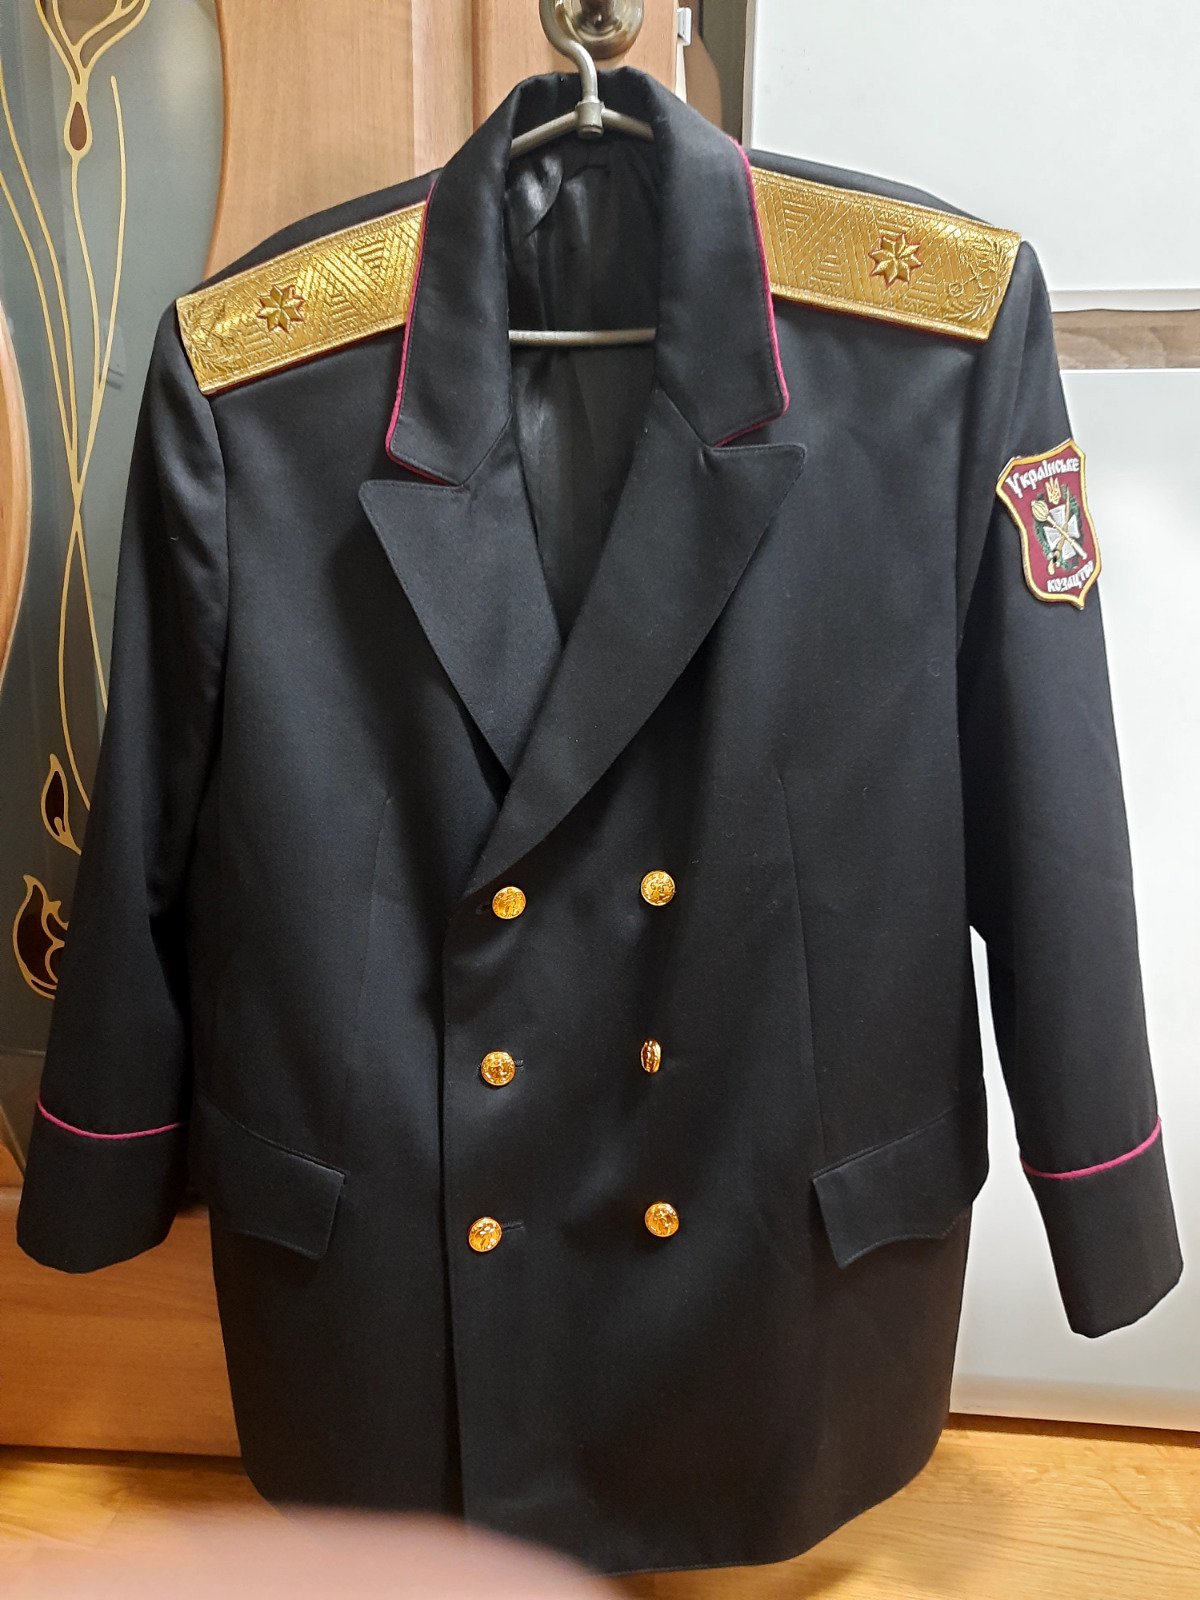 Cossack uniform of a general